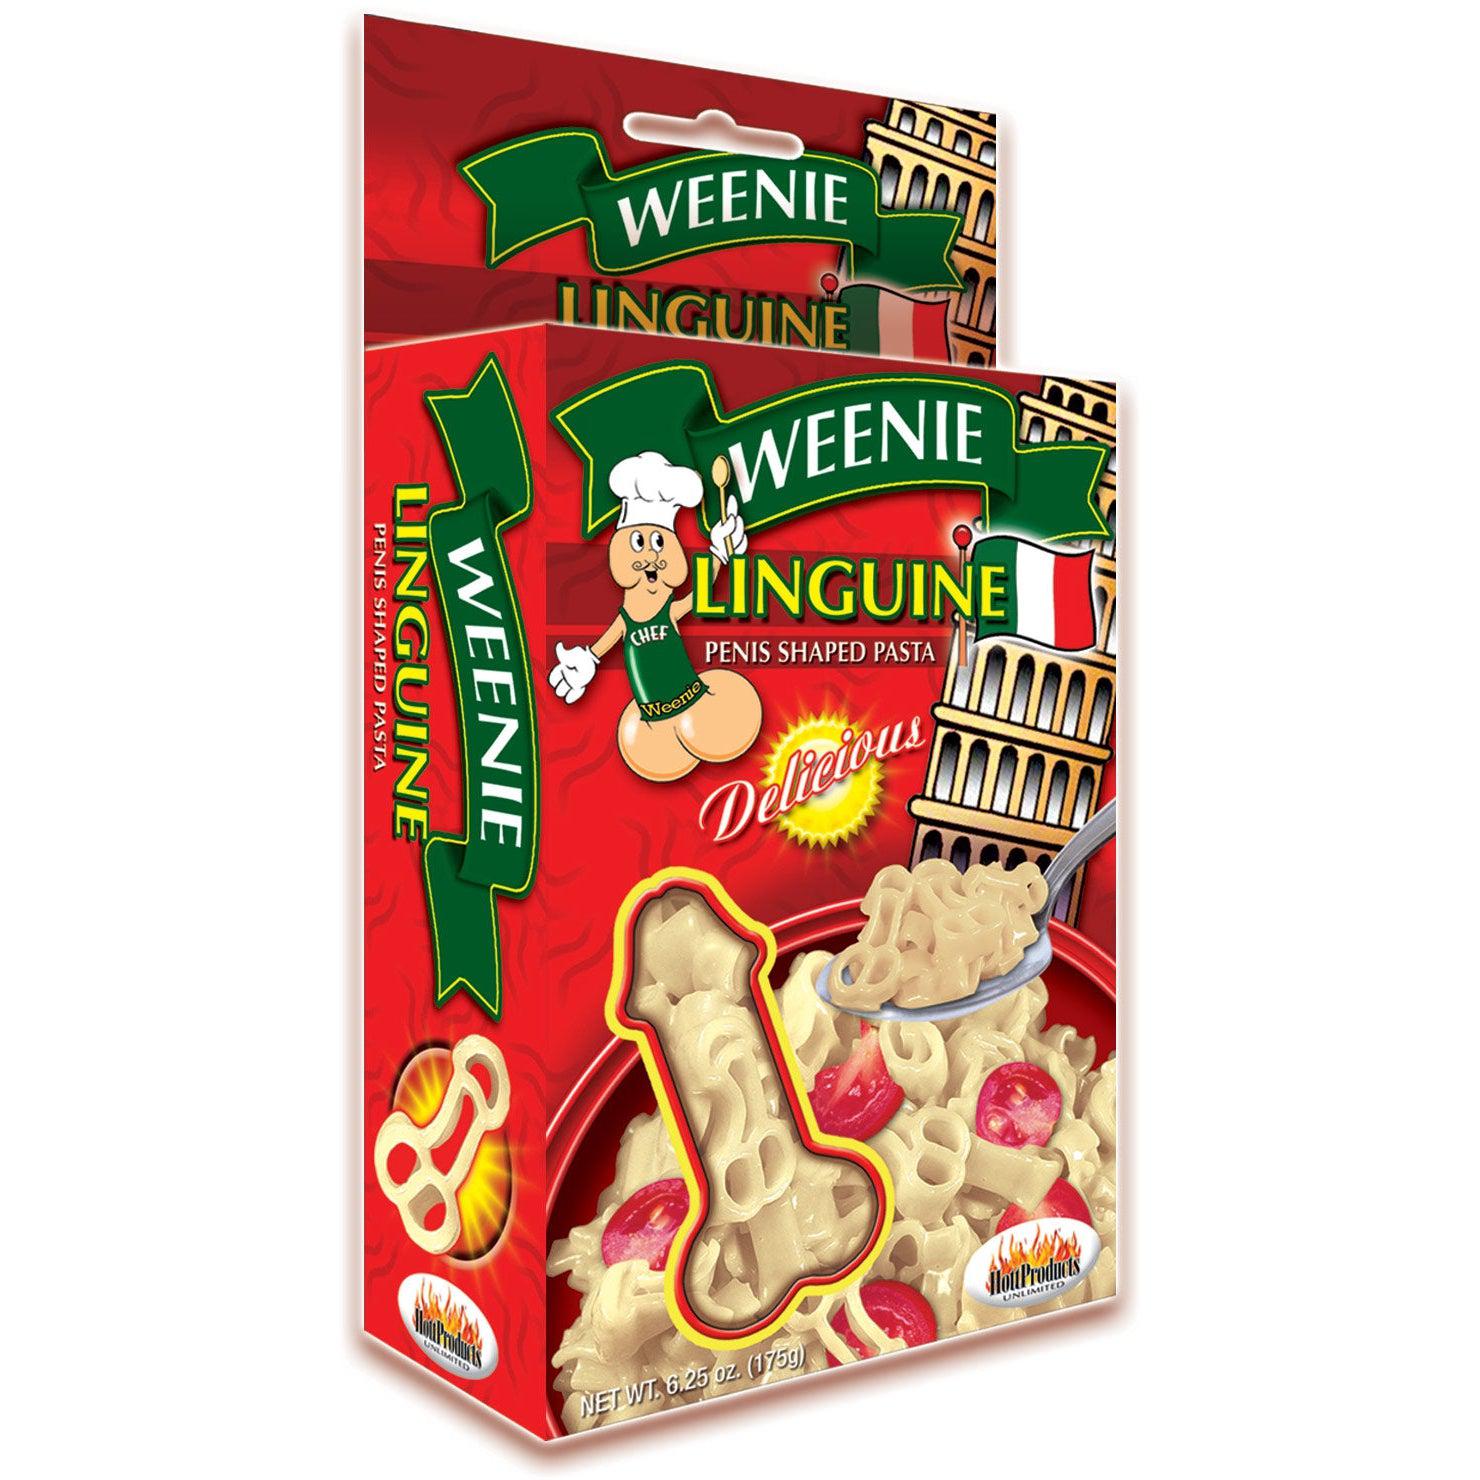 Weenie Linguine Penis Pasta